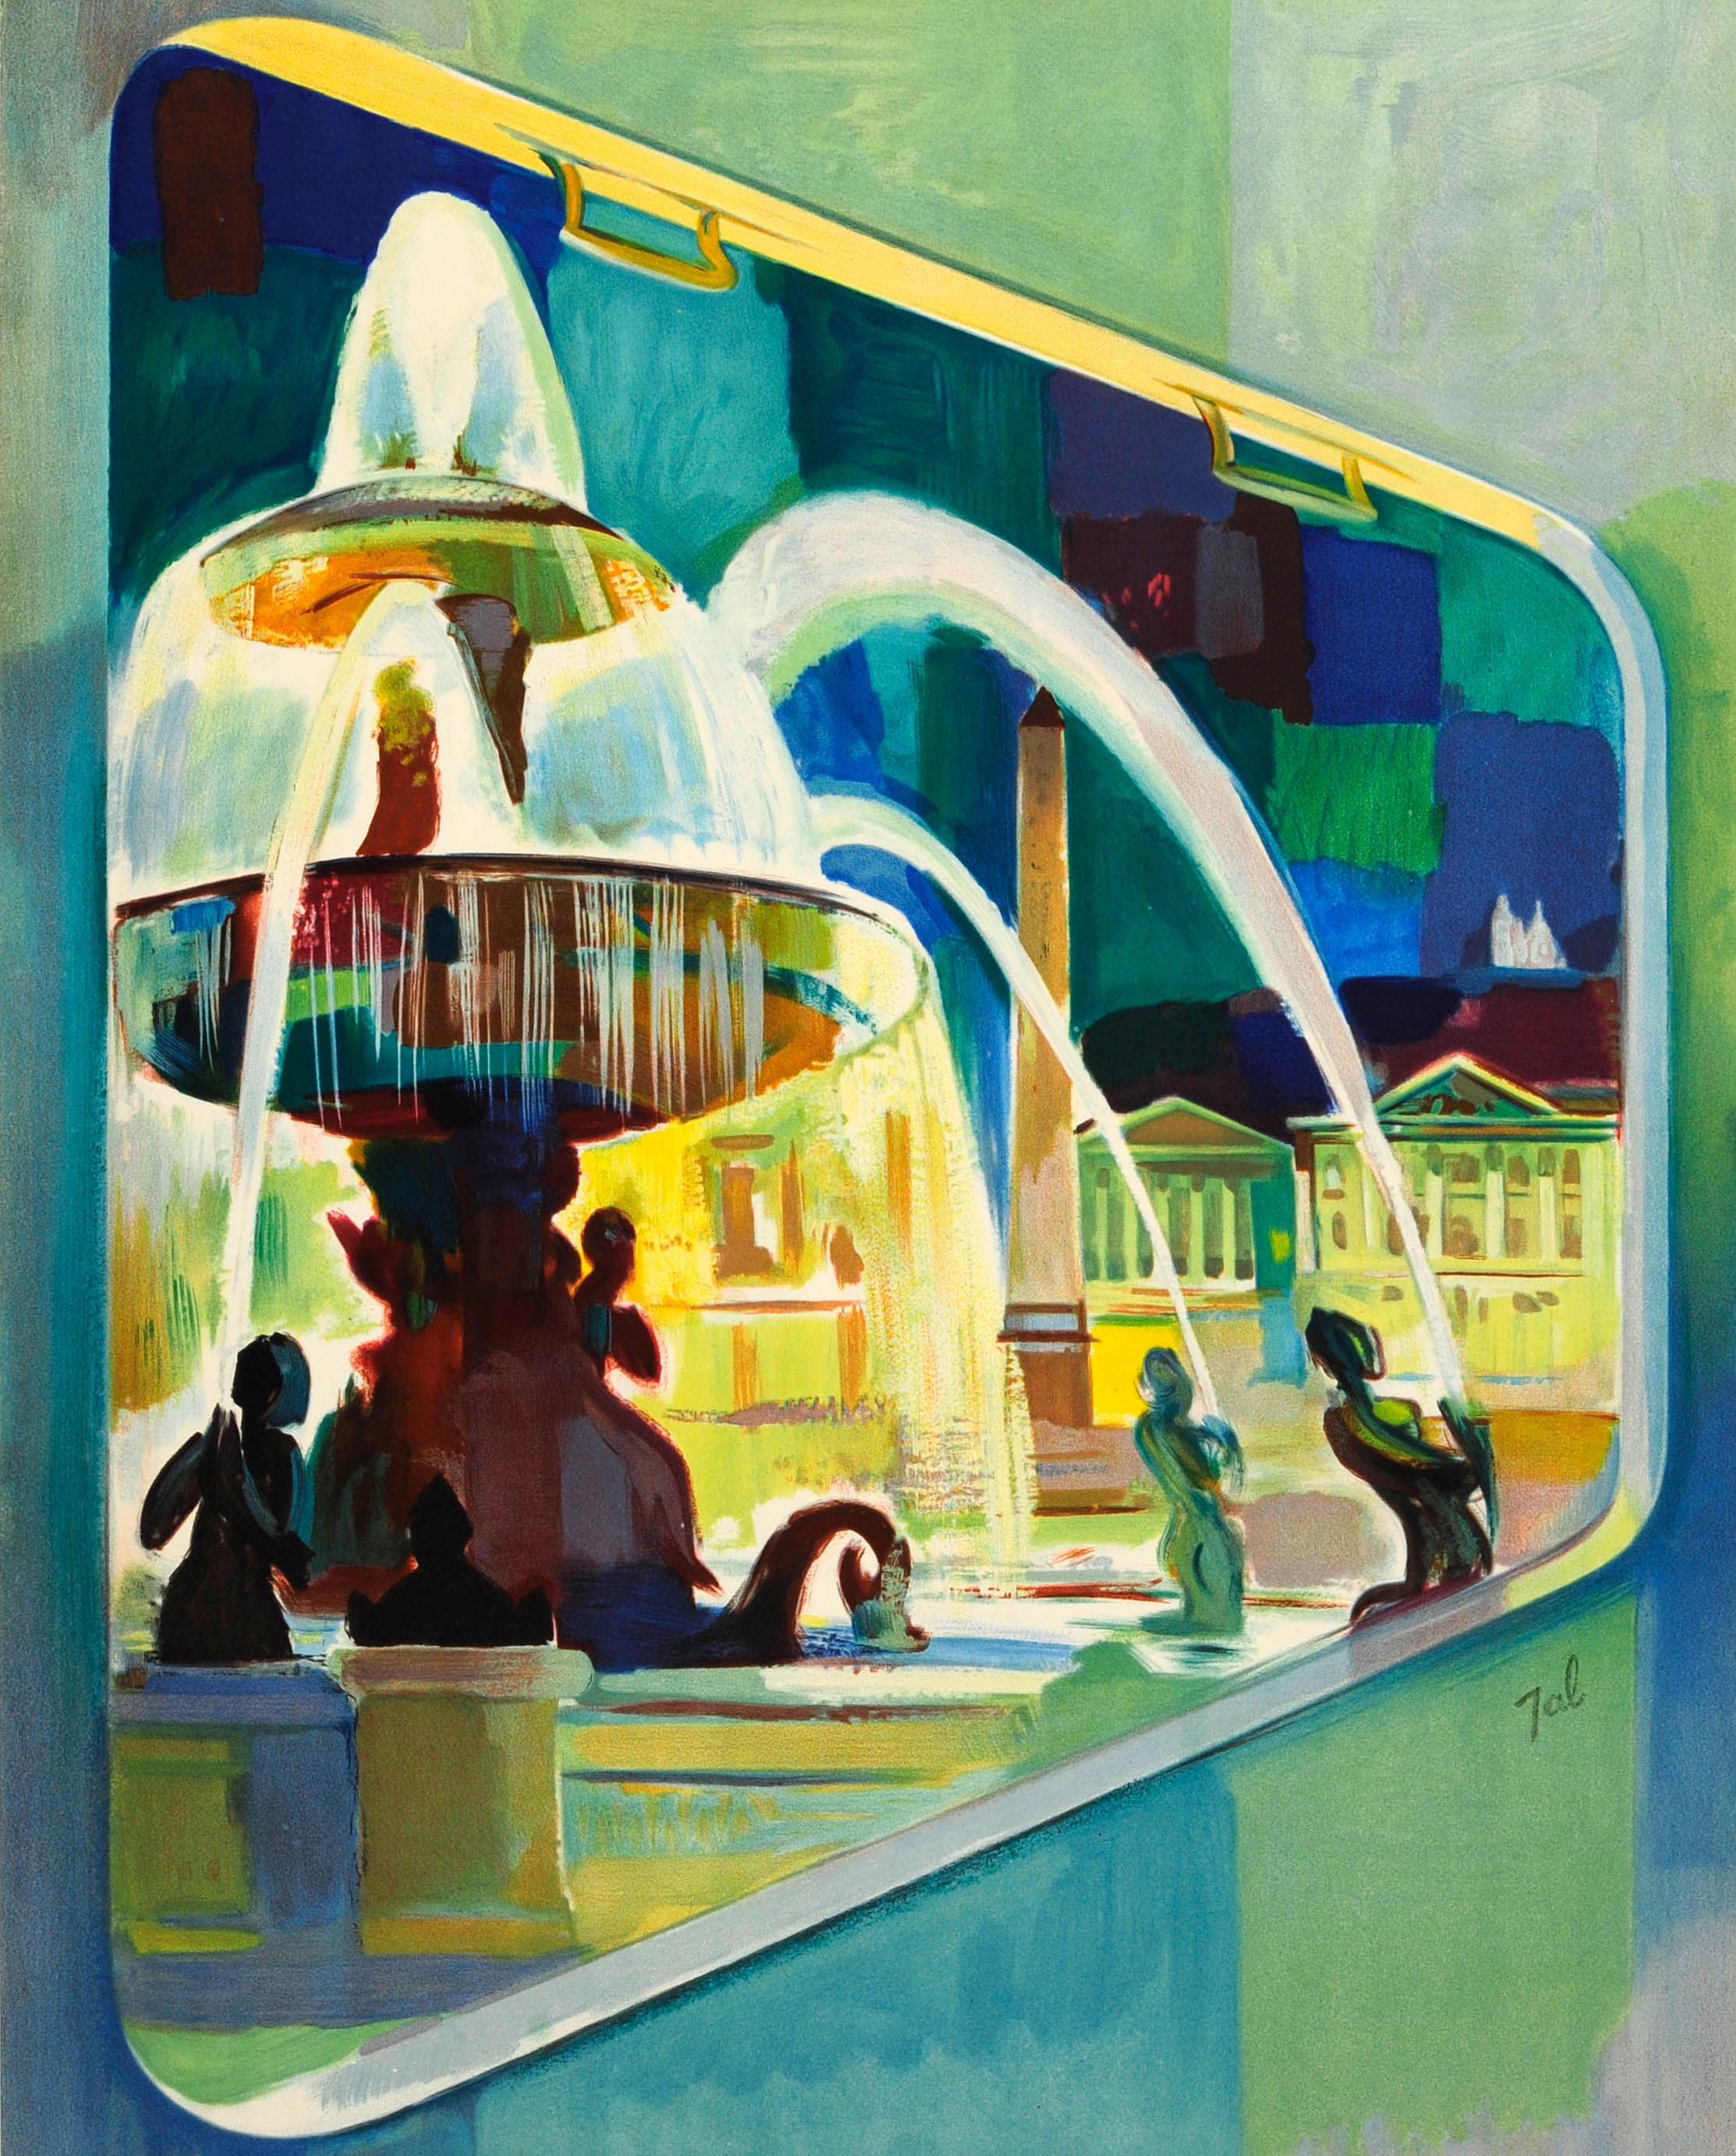 Affiche publicitaire originale de voyage d'époque : Visitez la France Paris avec les trains et les autocars de la SNCF. Superbe image représentant une vue nocturne de la fontaine et de l'obélisque égyptien de la place de la Concorde, vus depuis la